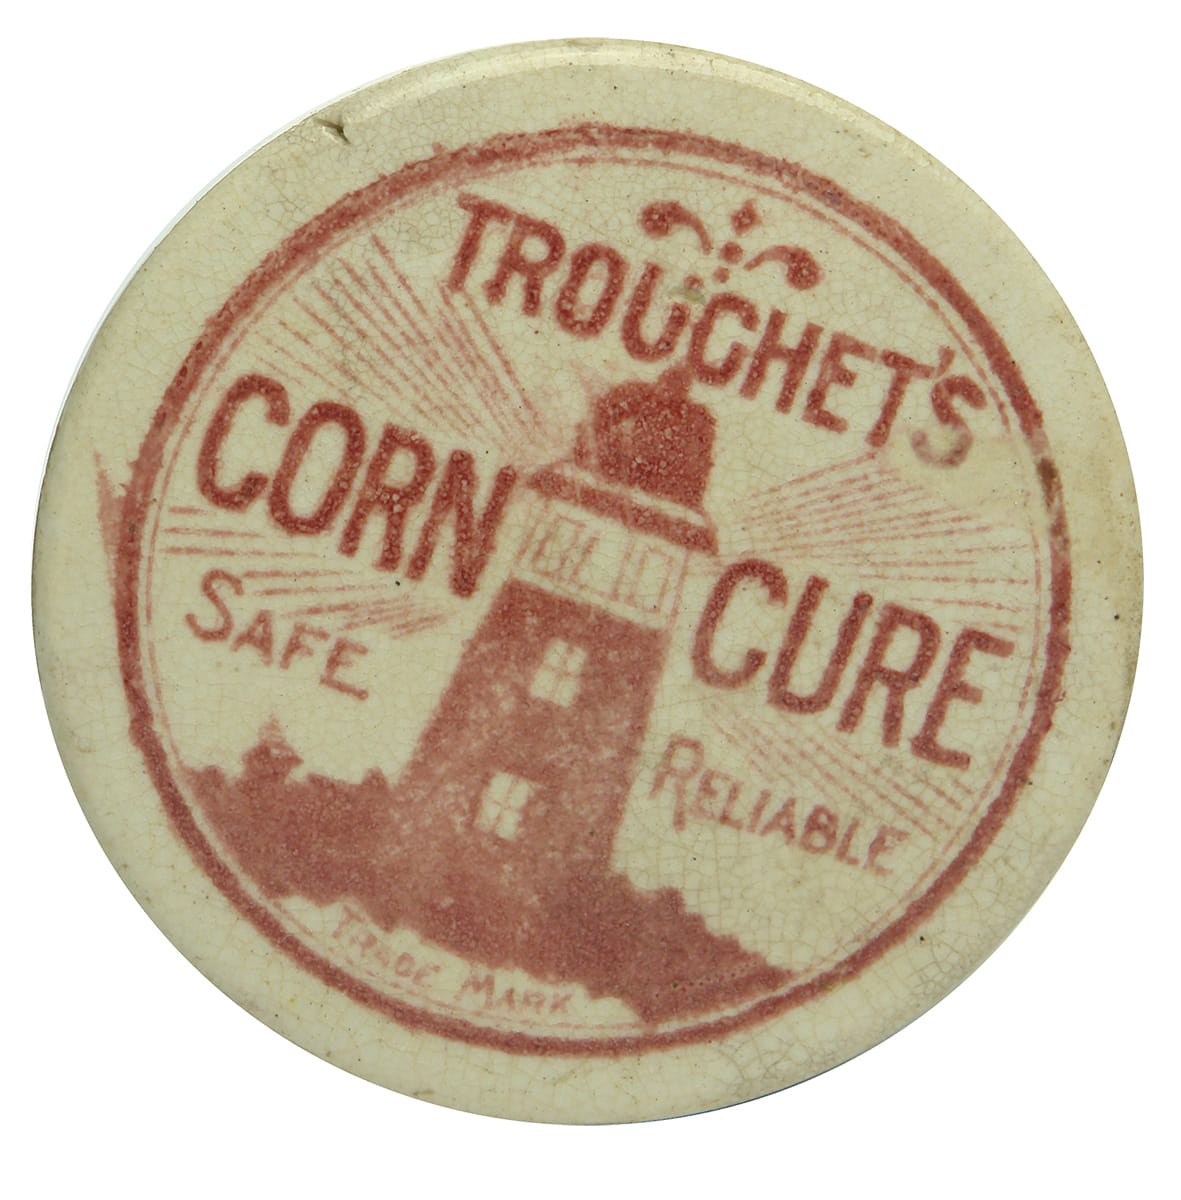 Trouchet's Corn Cure Antique Pot Lid